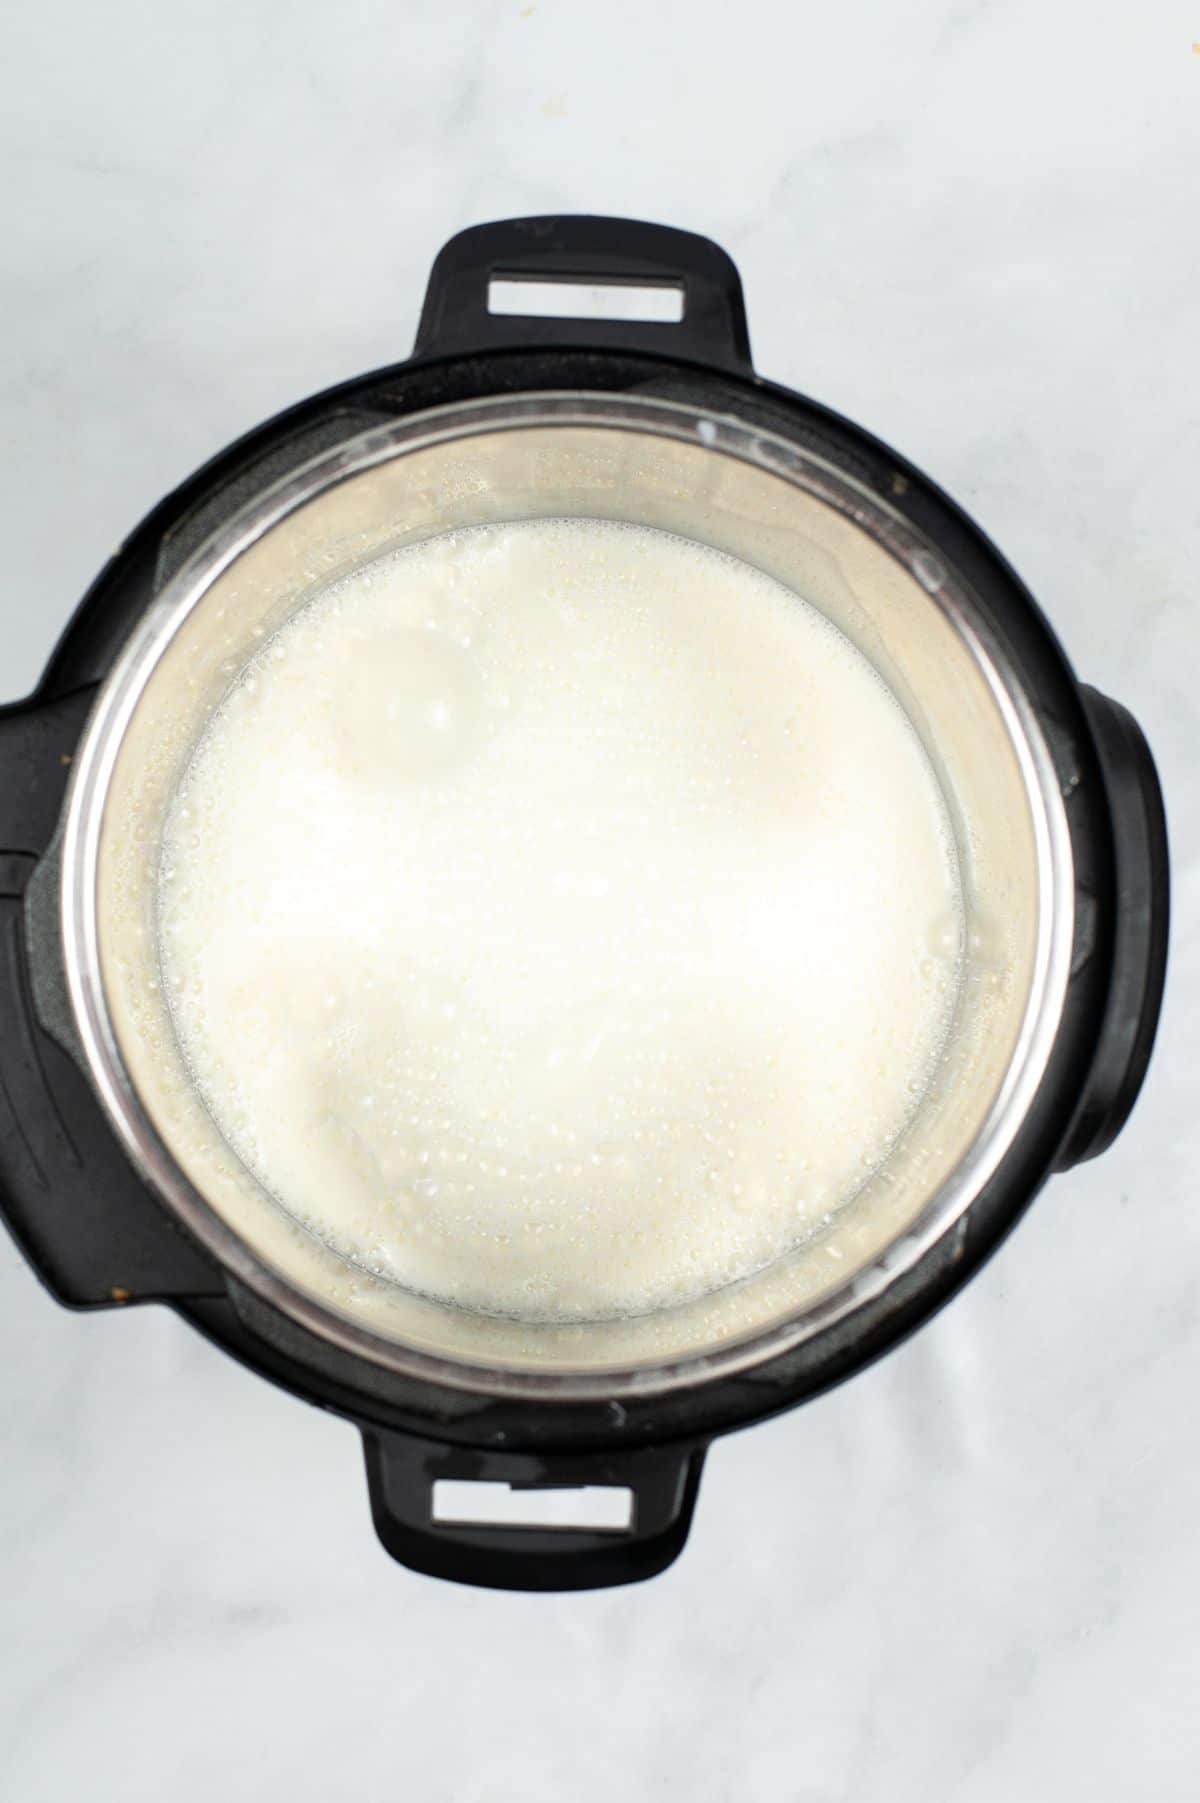 Lemon and Milk mixture in Instant Pot 